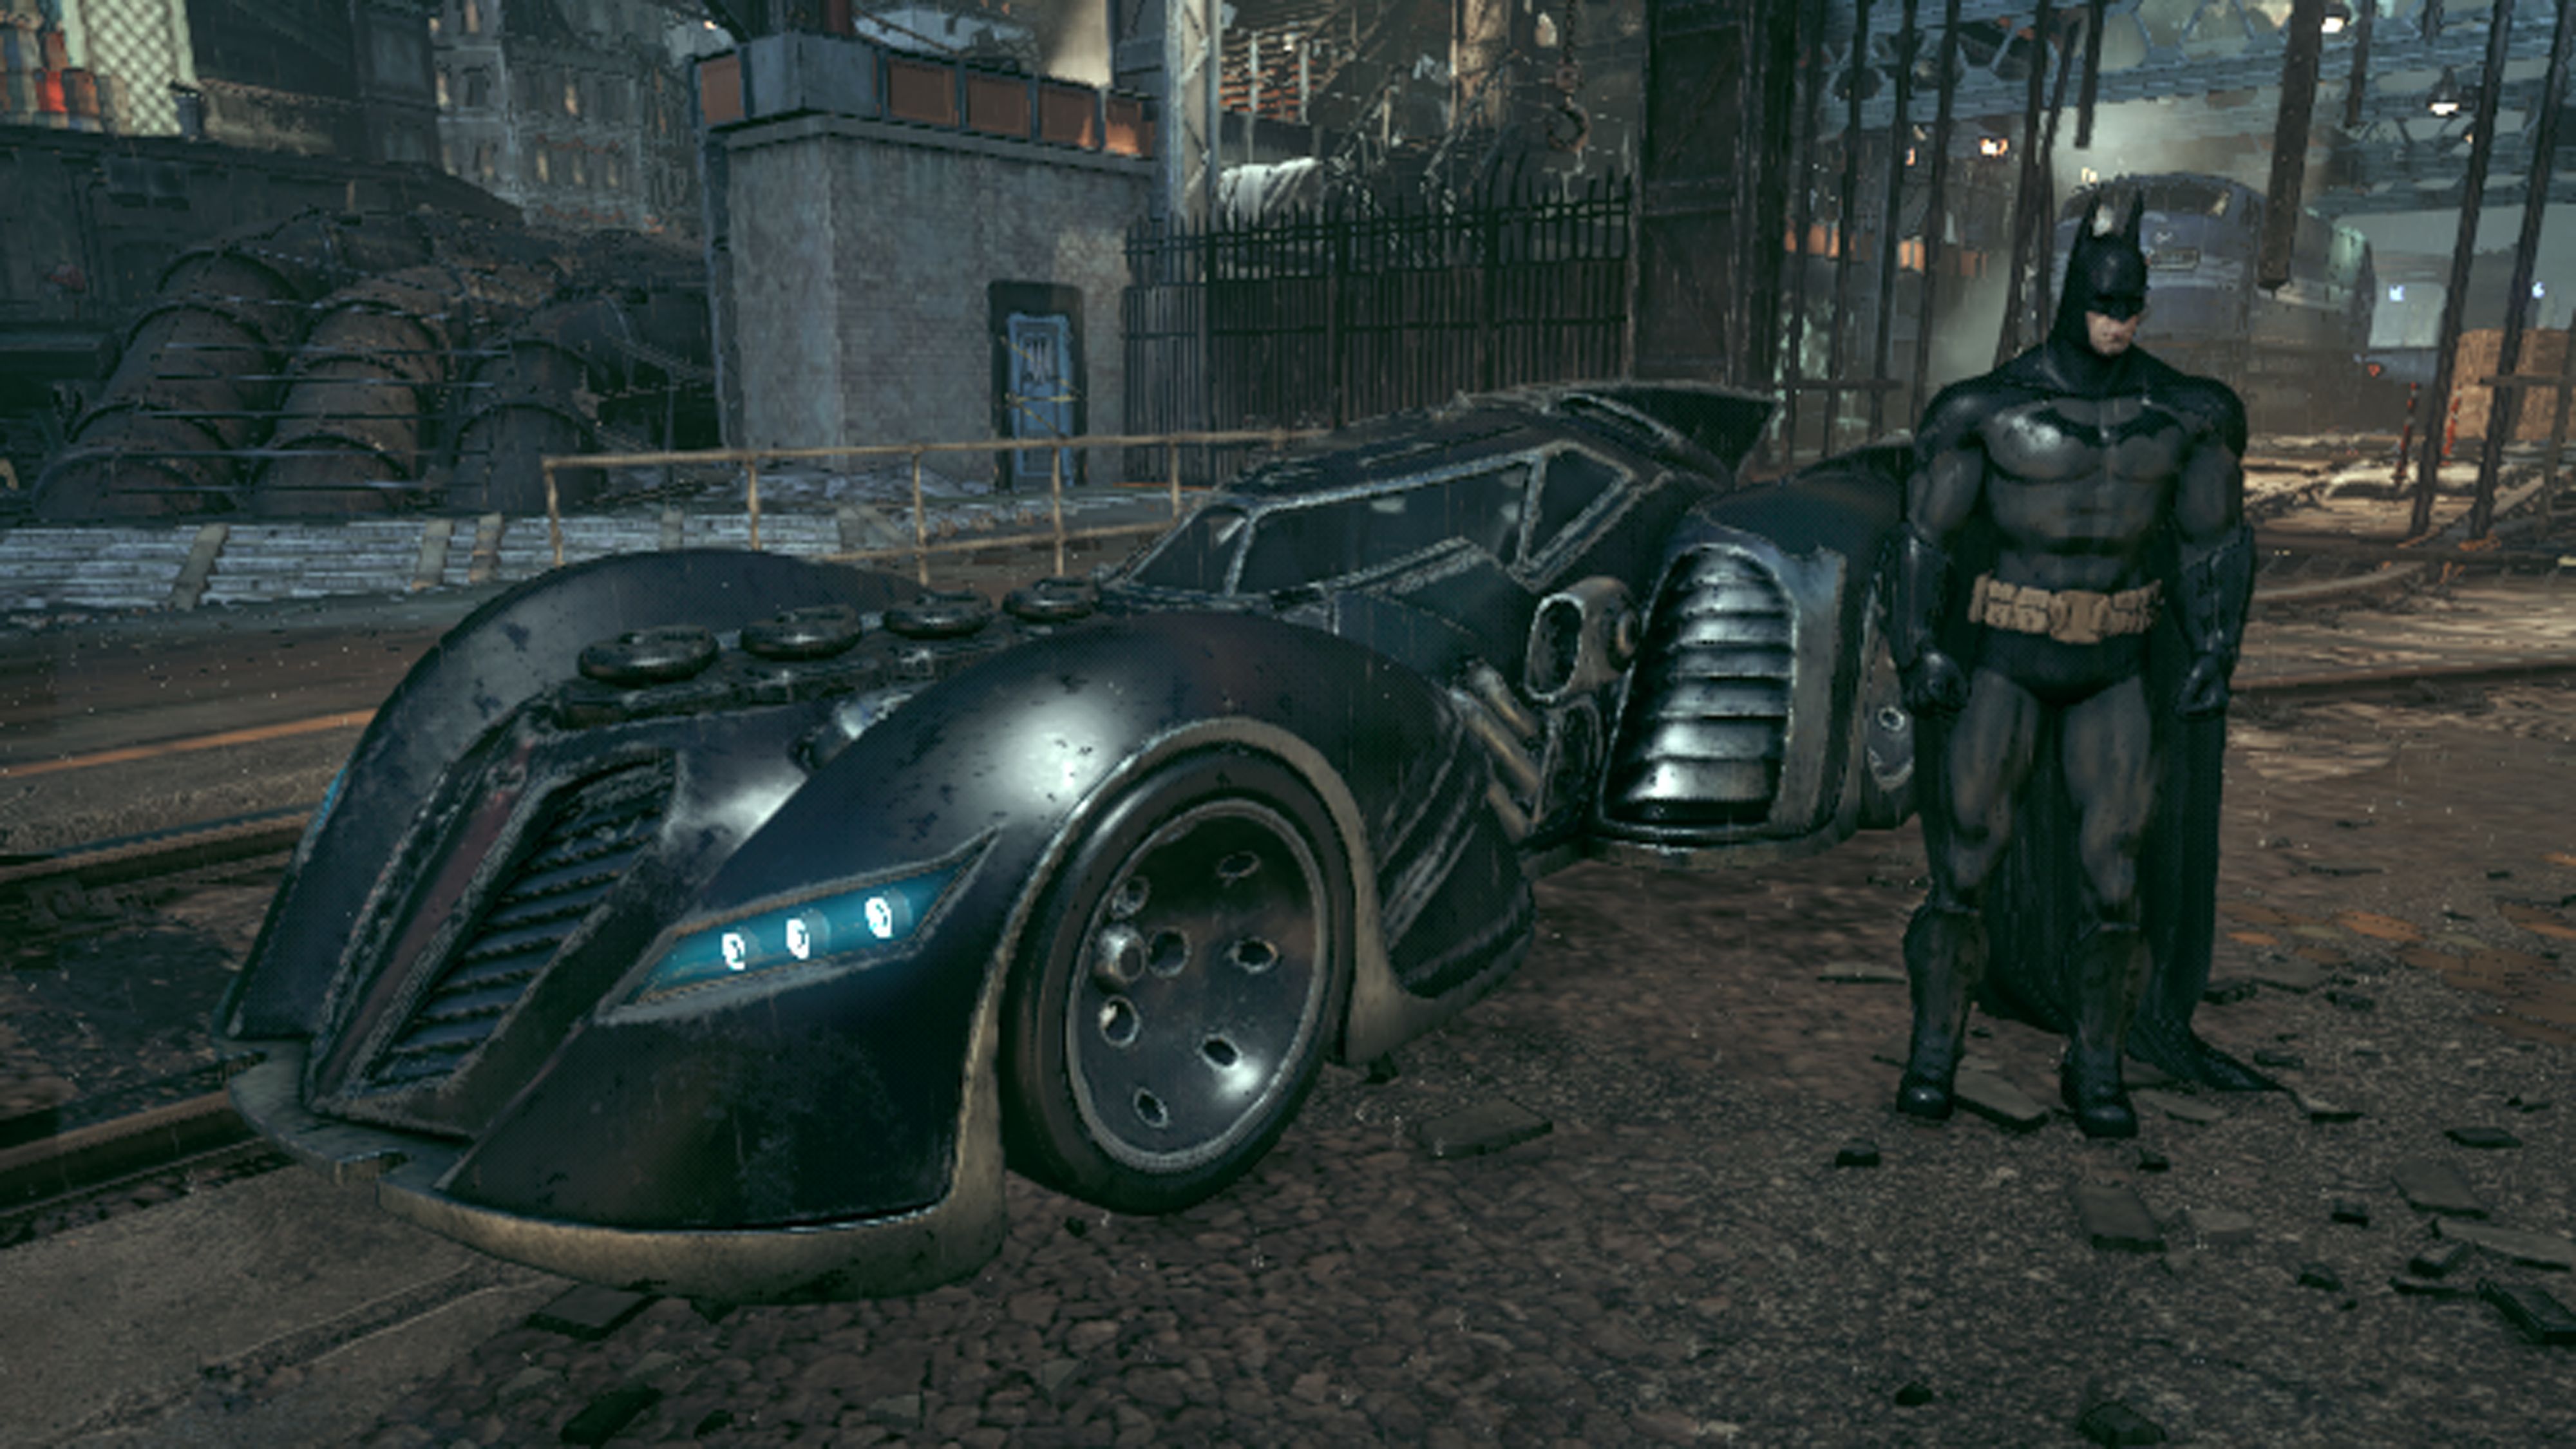 Длс бэтмен. Batman Arkham Knight Бэтмобиль. Бэтмобиль из Arkham Asylum. Машина Бэтмена Arkham Knight. Batman Arkham Asylum Batmobile.